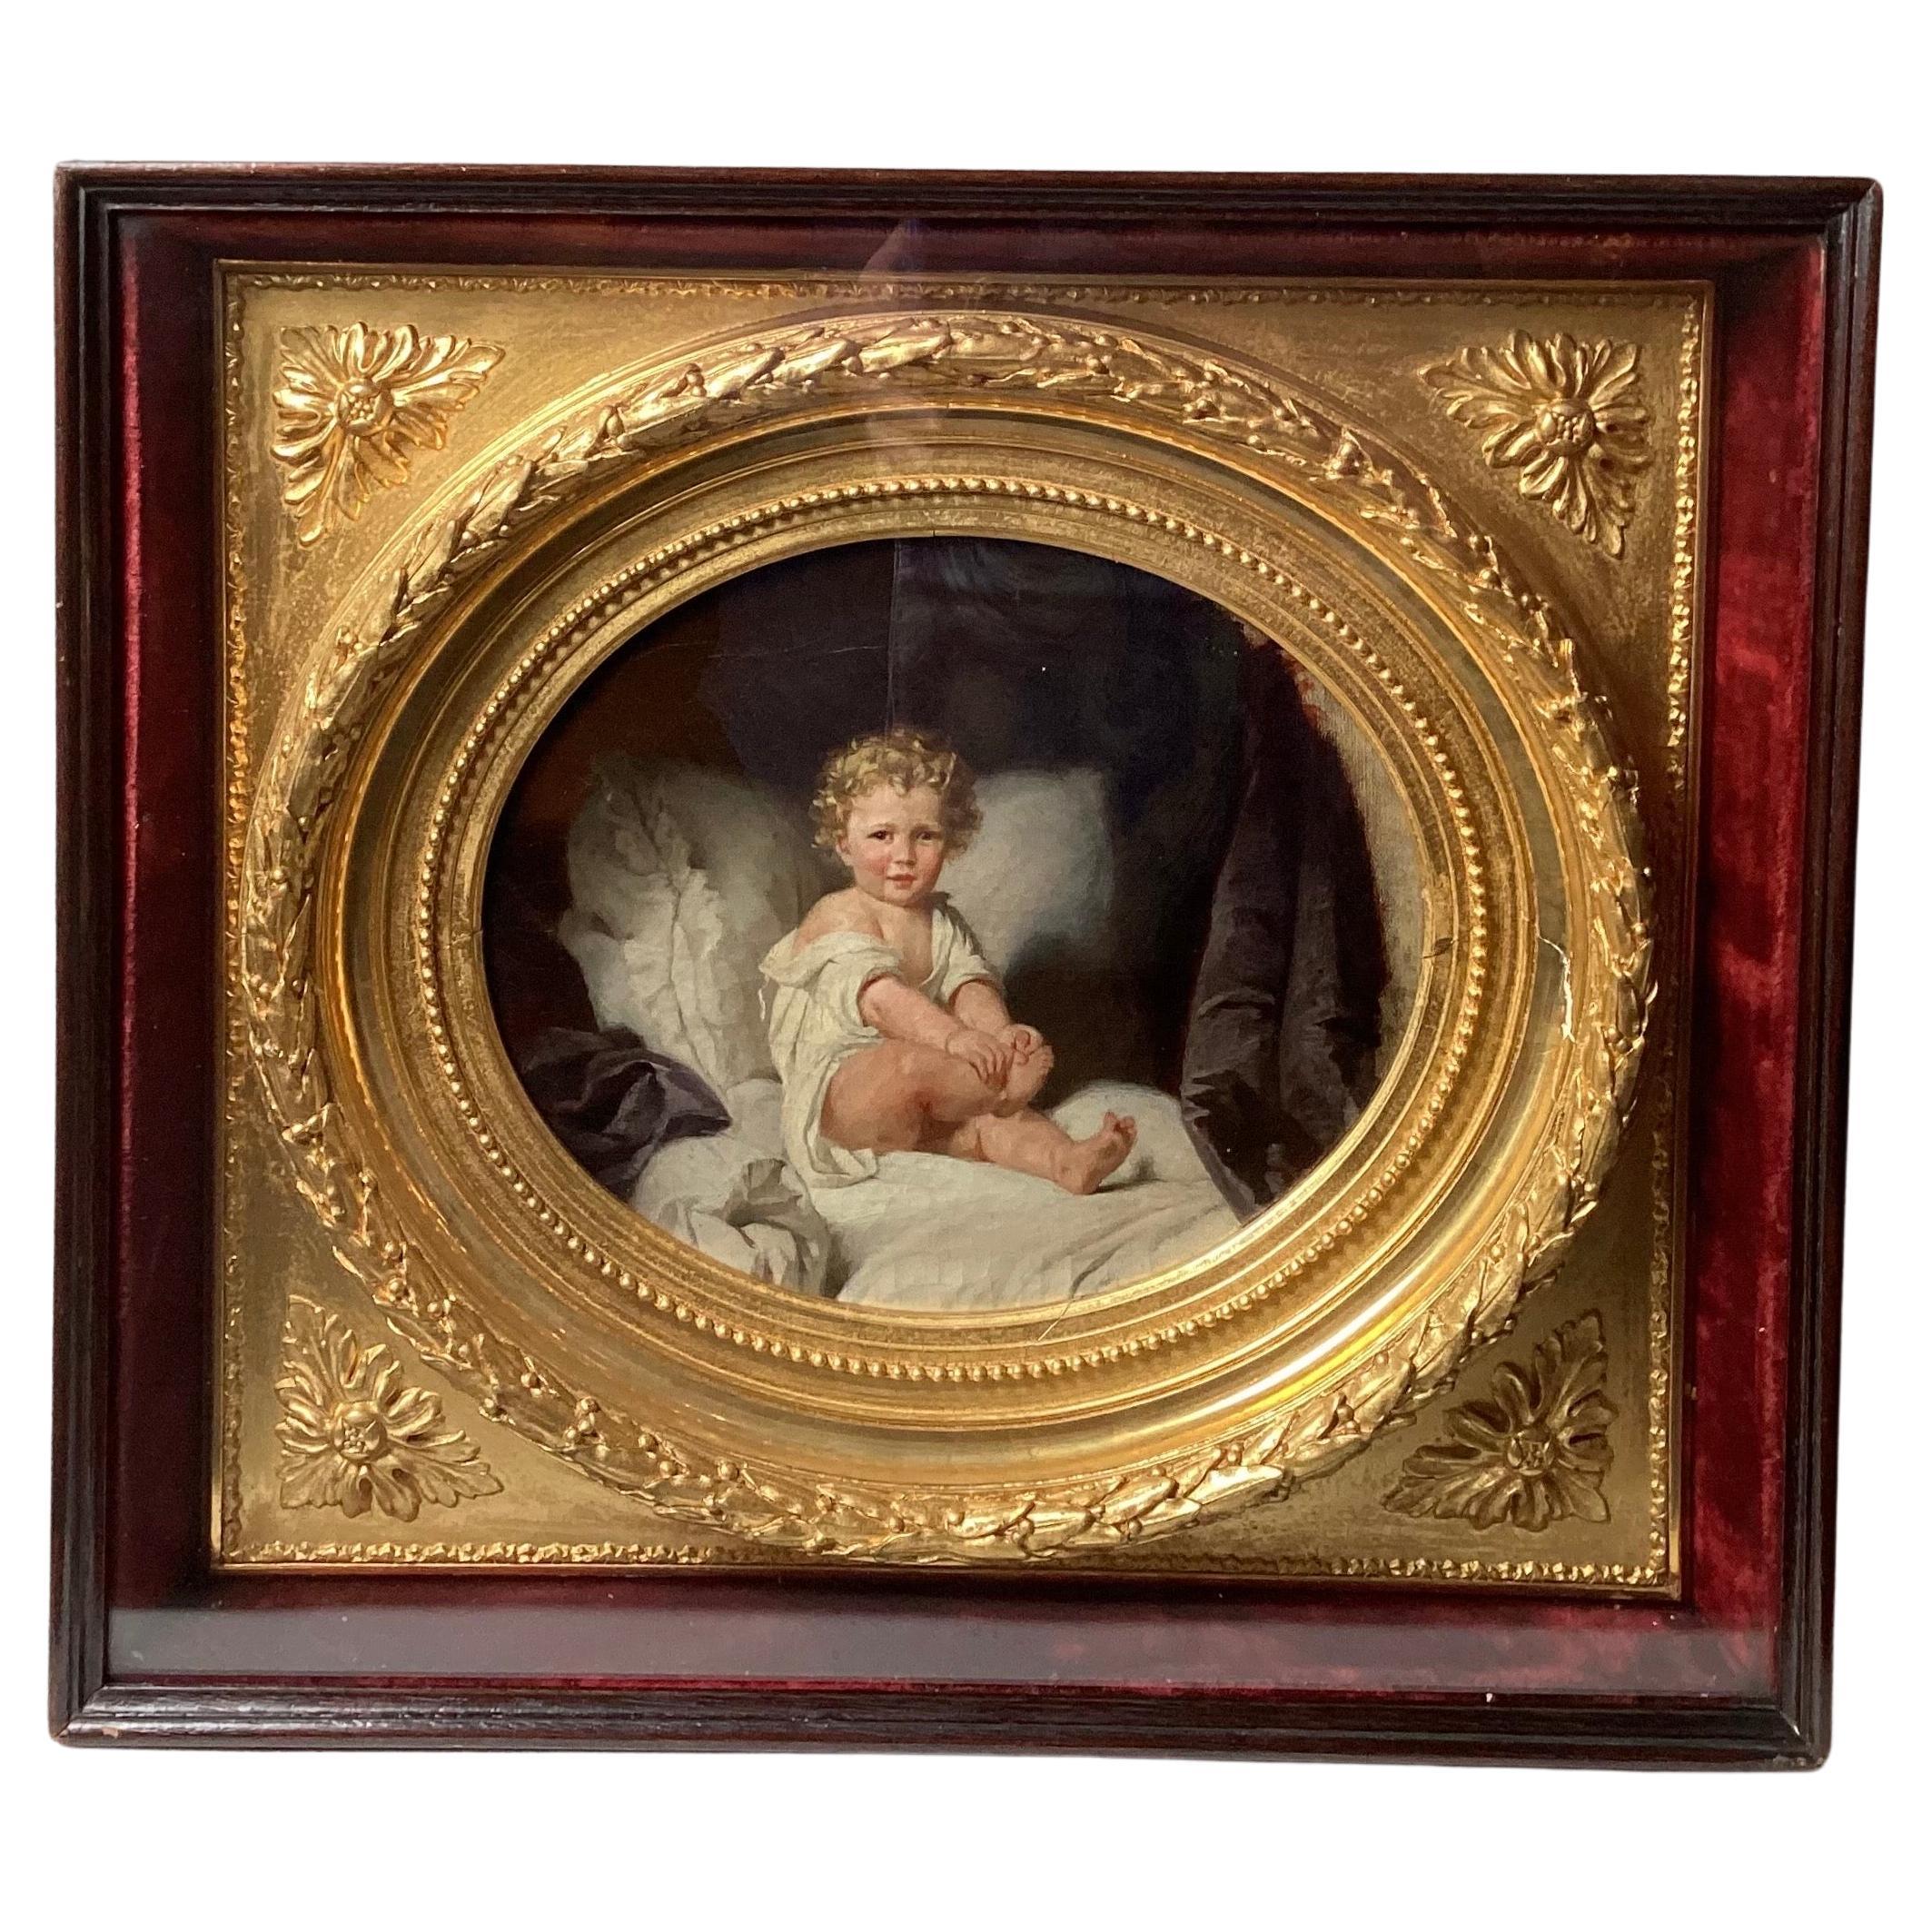 Schönes Porträt eines jungen Jungen mit GOlden-Haar in einem atemberaubenden Original aus vergoldetem Holz